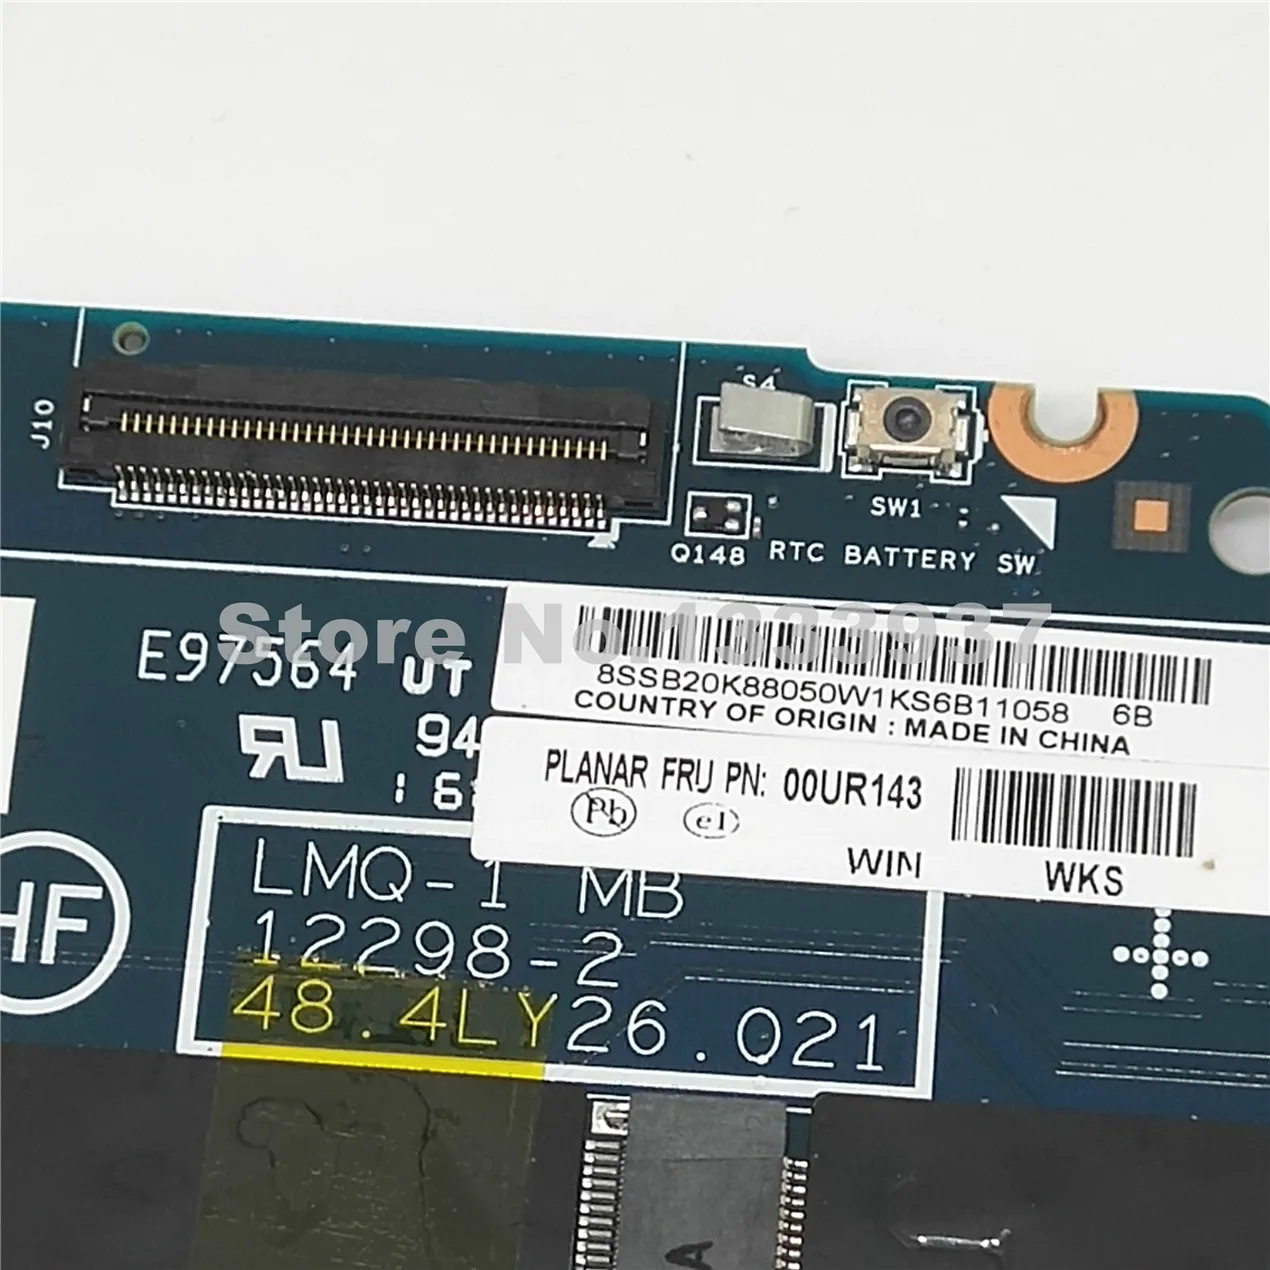 00UR143 Za lenovo thinkpad X1C X1 Carbon prenosni računalnik z matično ploščo LMQ-1 MB 12298-2 48.4LY26.021 z i5-4200 CPU 4G RAM Mainboard